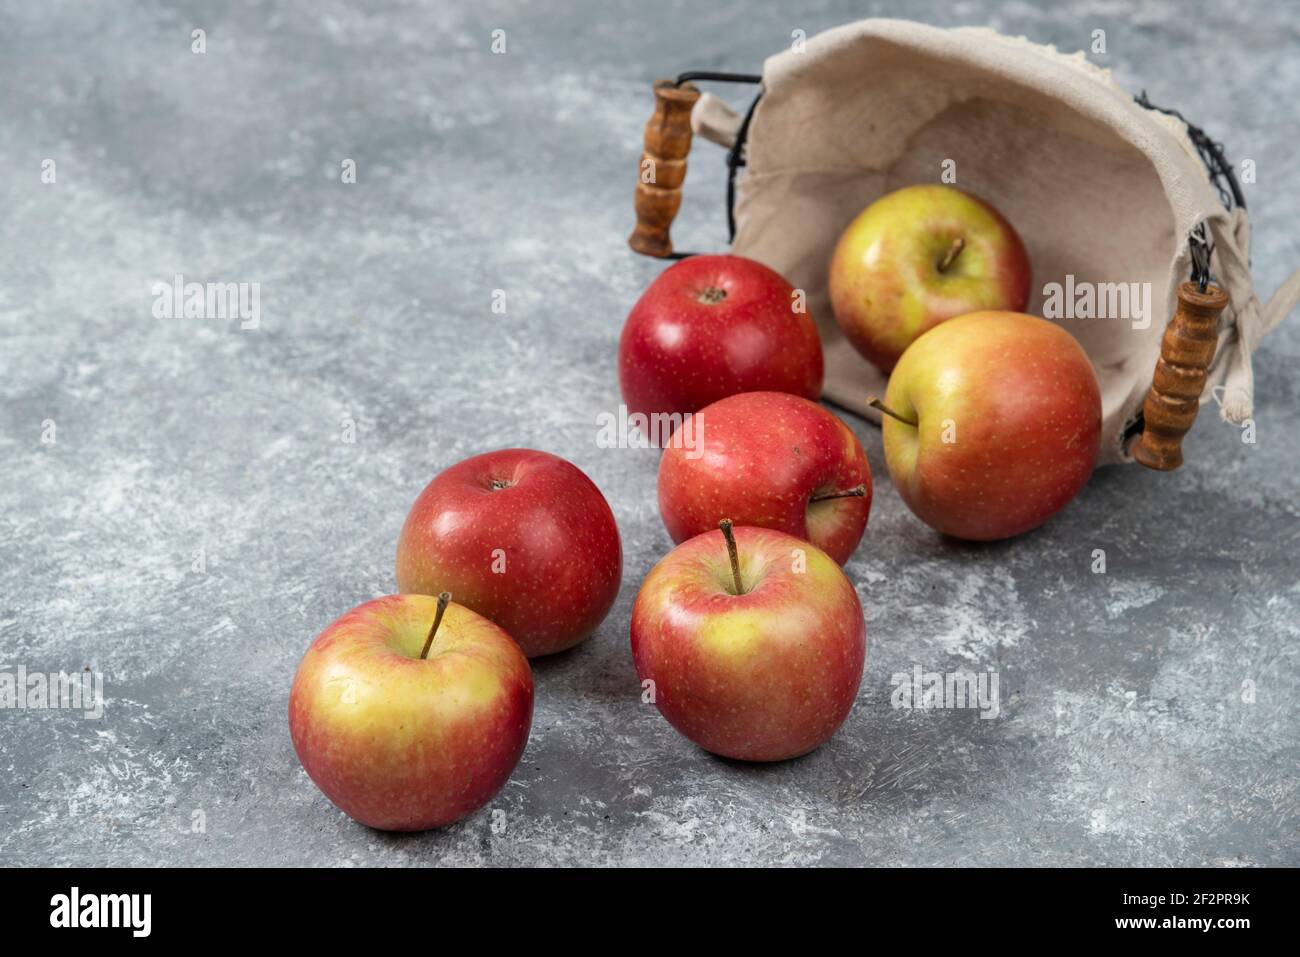 Haufen frischer reifer Äpfel aus dem Korbkorb auf Marmoroberfläche Stockfoto